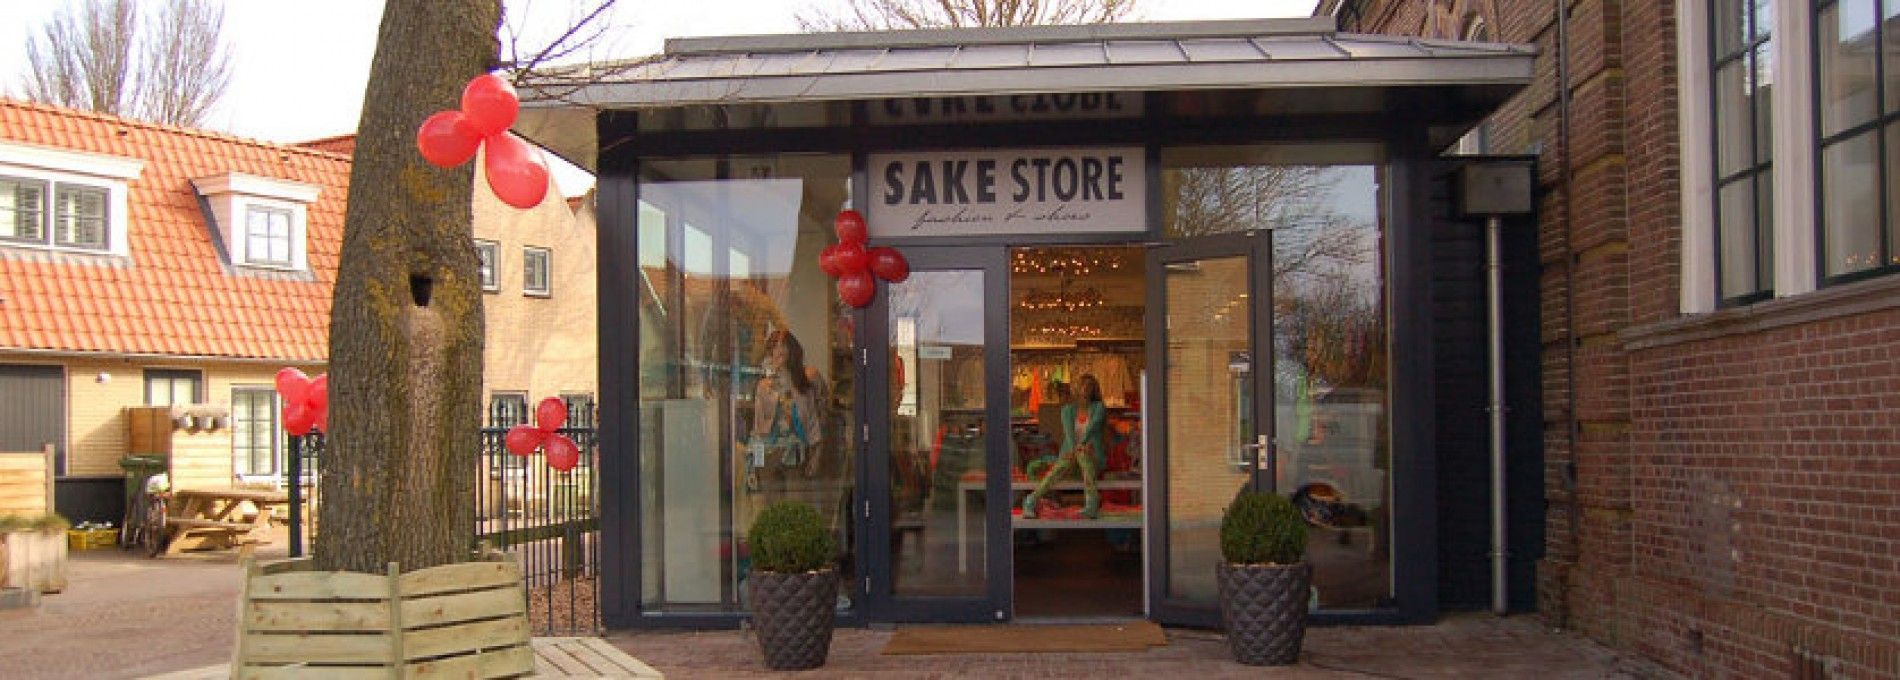 Sake Store - VVV Ameland